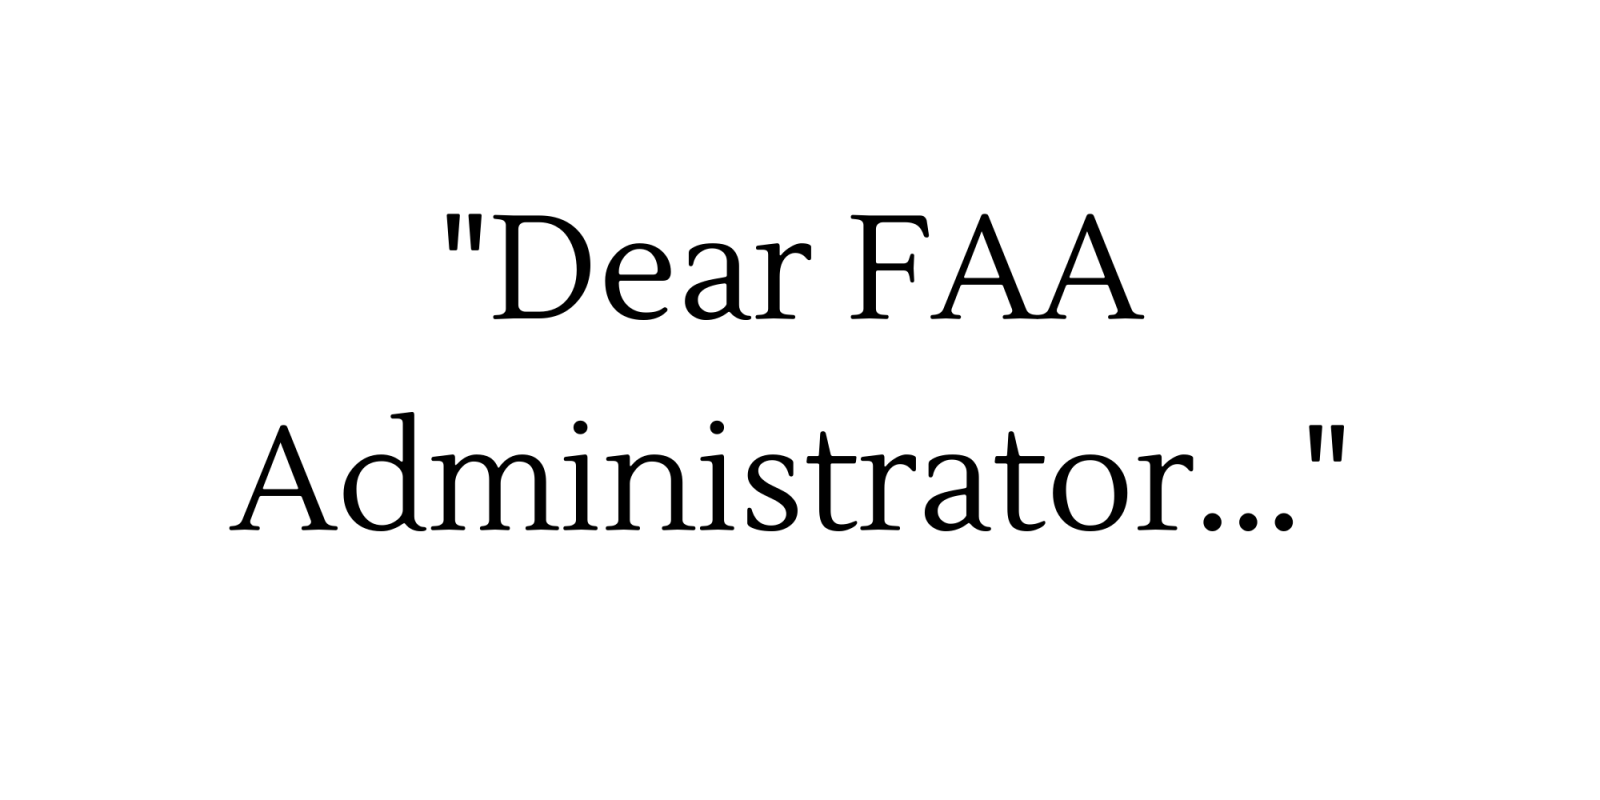 FAA Remote ID